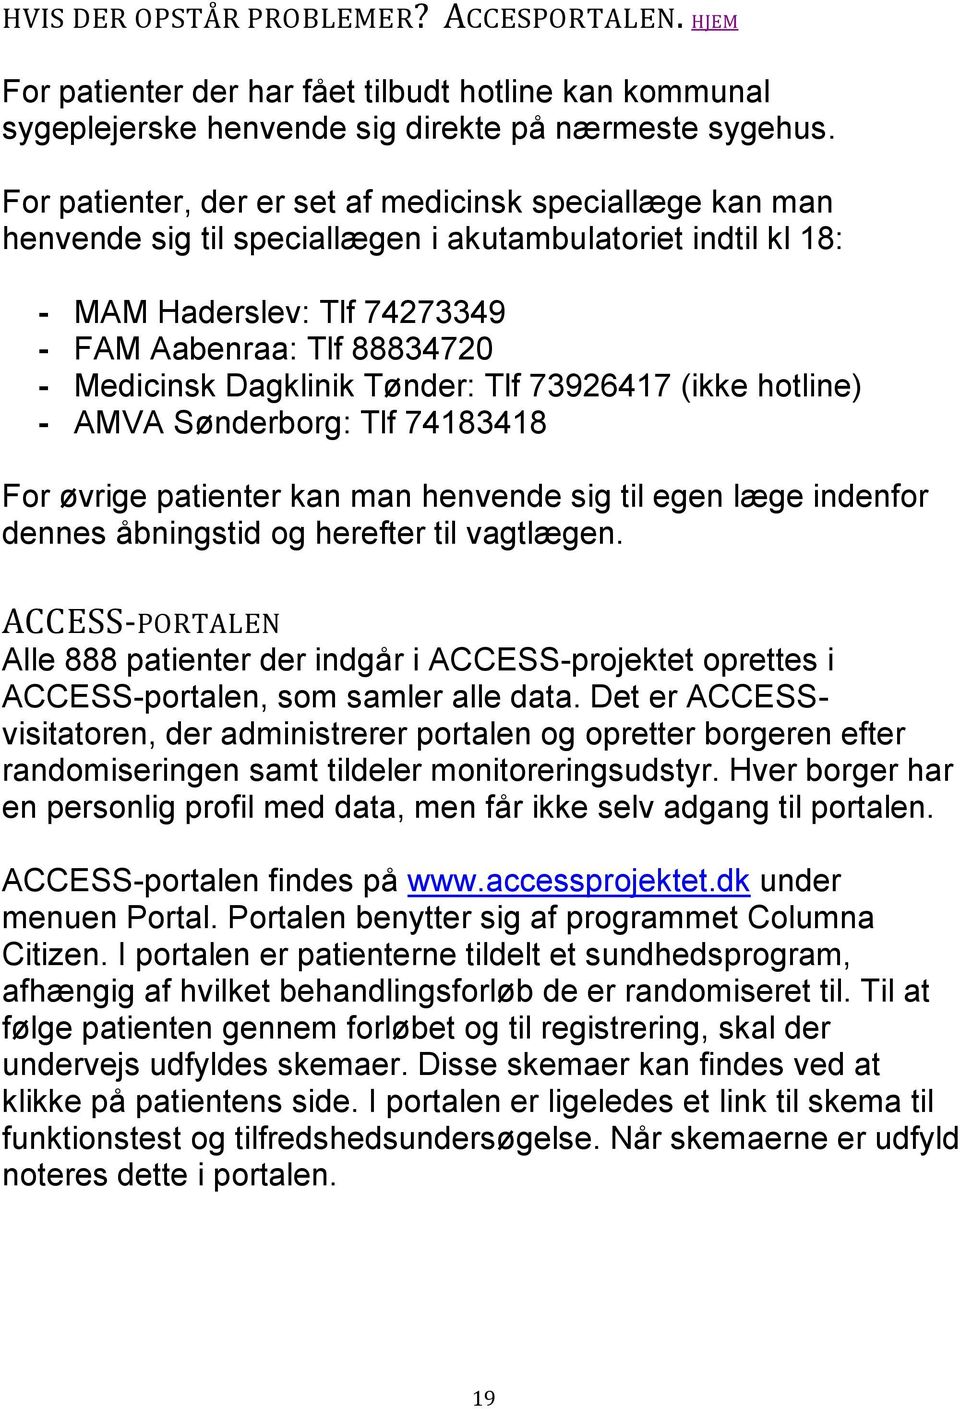 Dagklinik Tønder: Tlf 73926417 (ikke hotline) - AMVA Sønderborg: Tlf 74183418 For øvrige patienter kan man henvende sig til egen læge indenfor dennes åbningstid og herefter til vagtlægen.